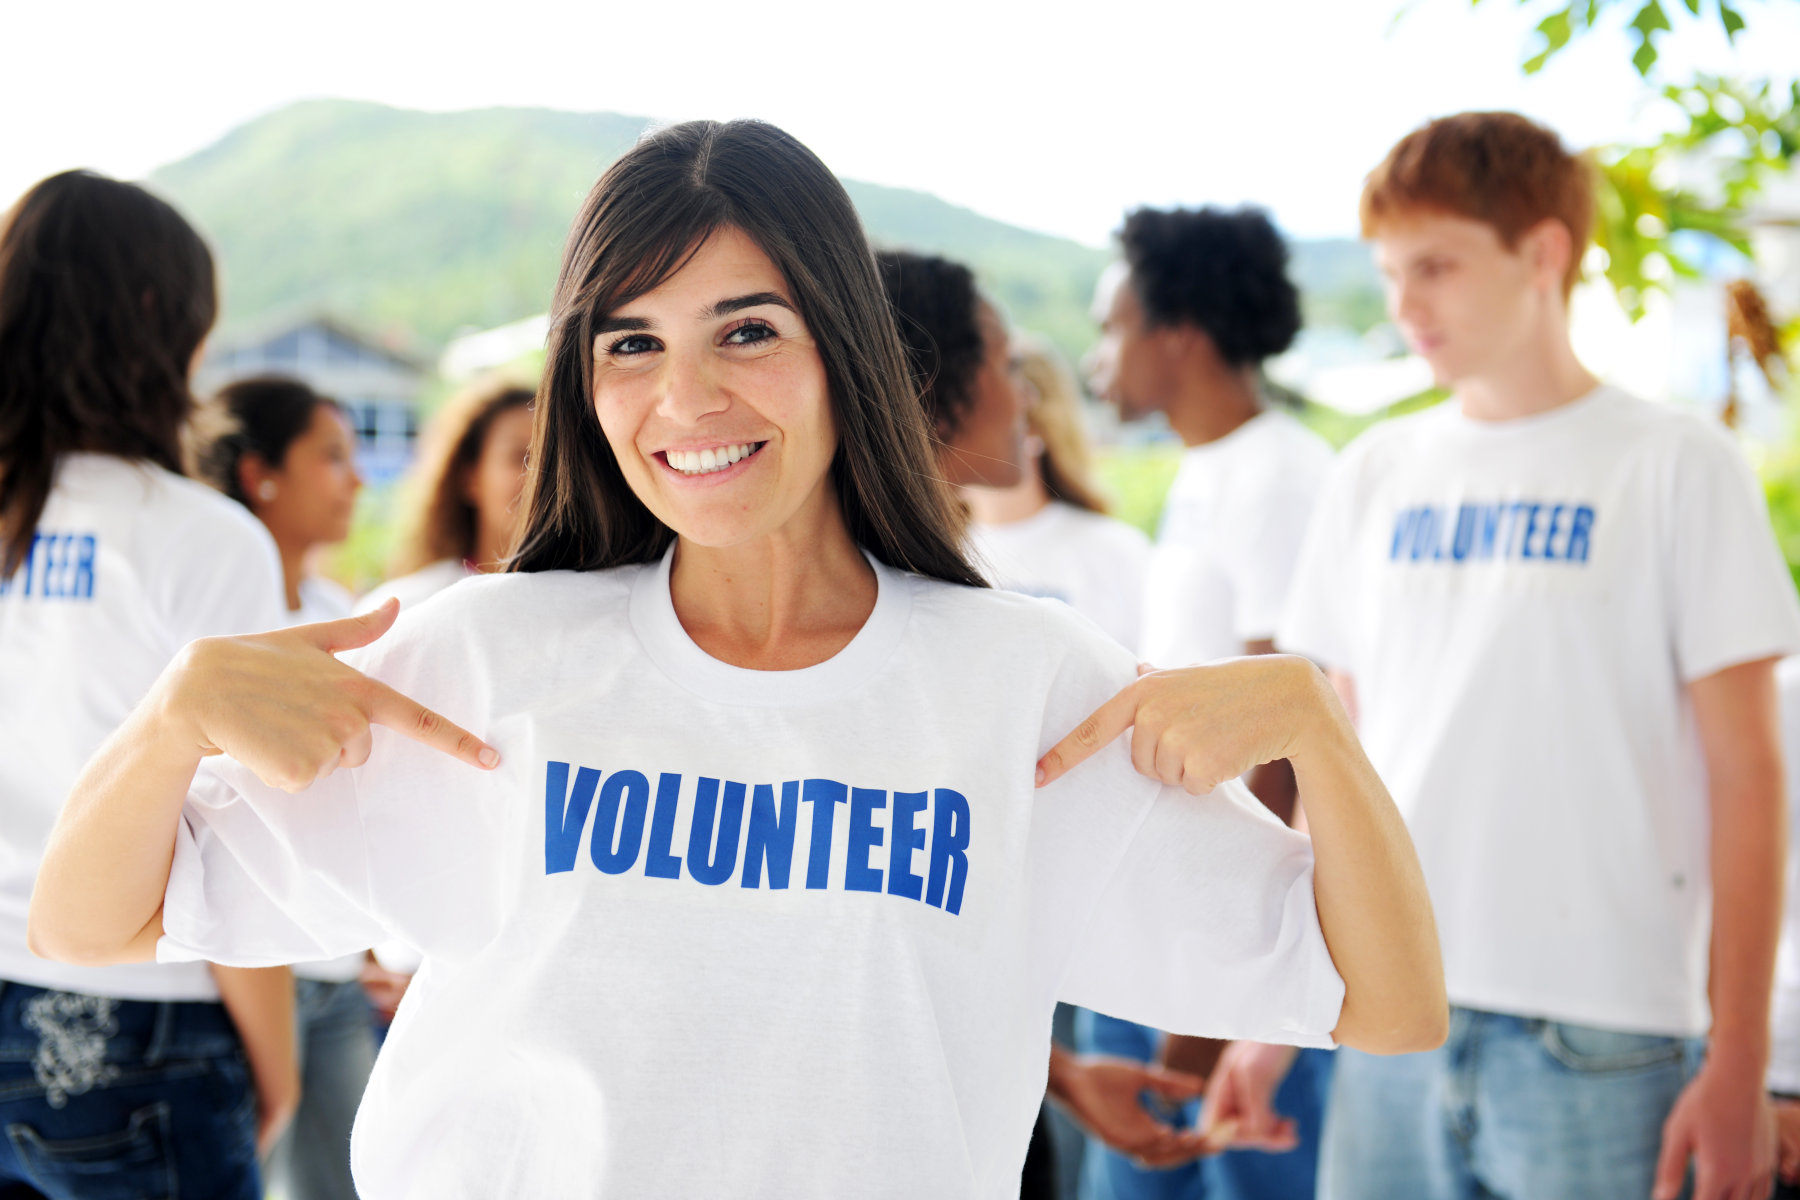 Why volunteer